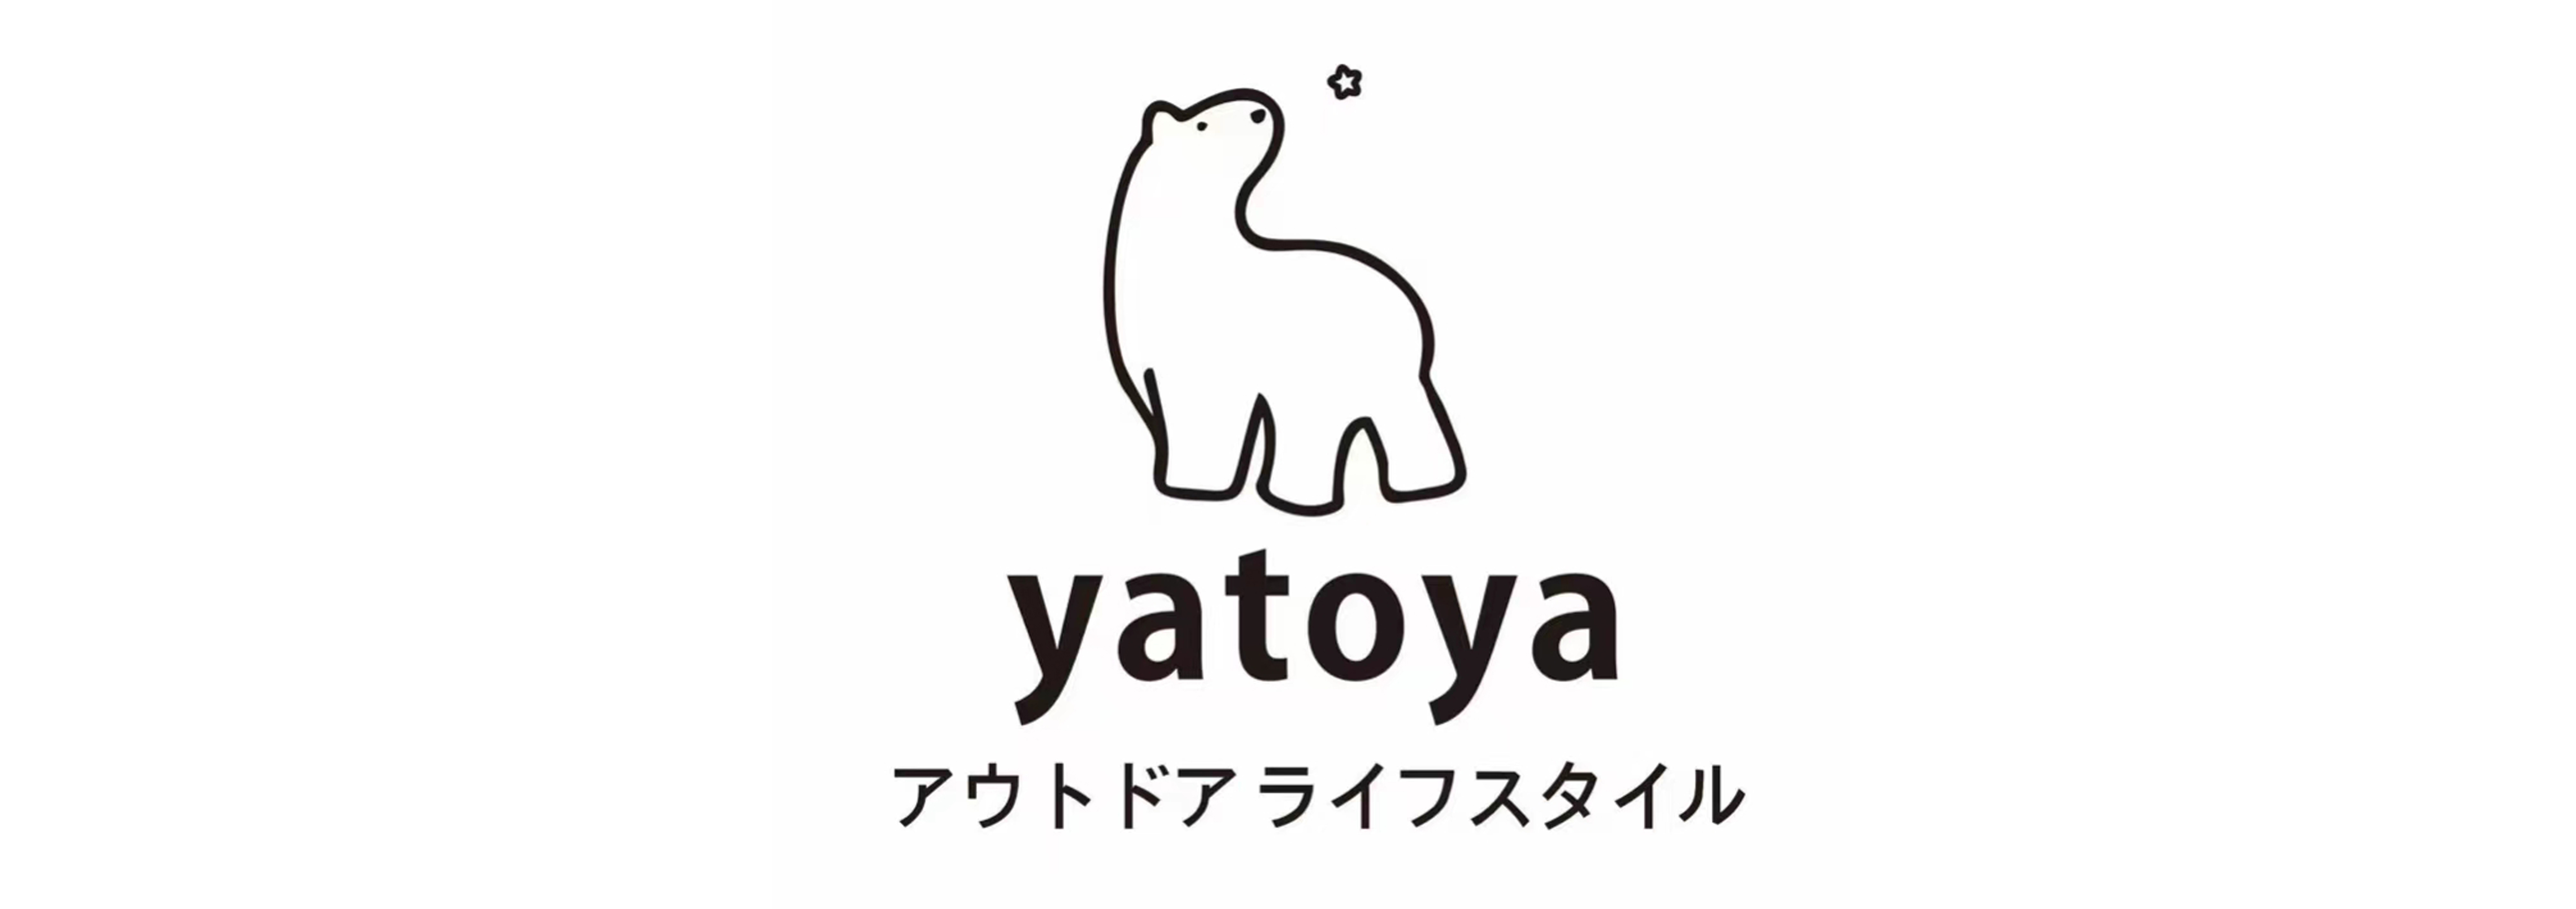 yatoya